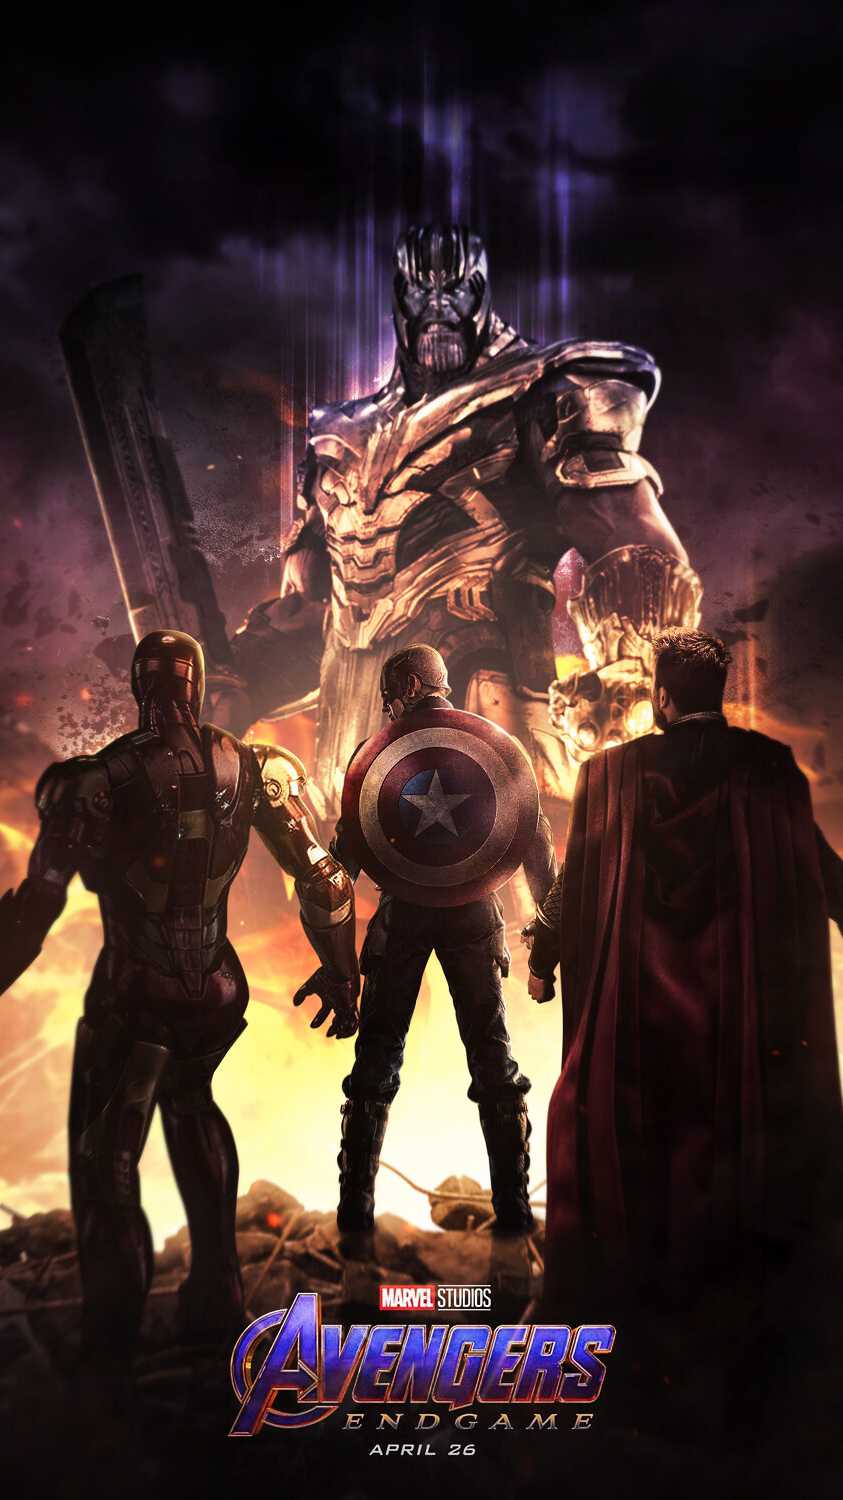 Thanos Endgame Wallpaper Free Thanos Endgame Background